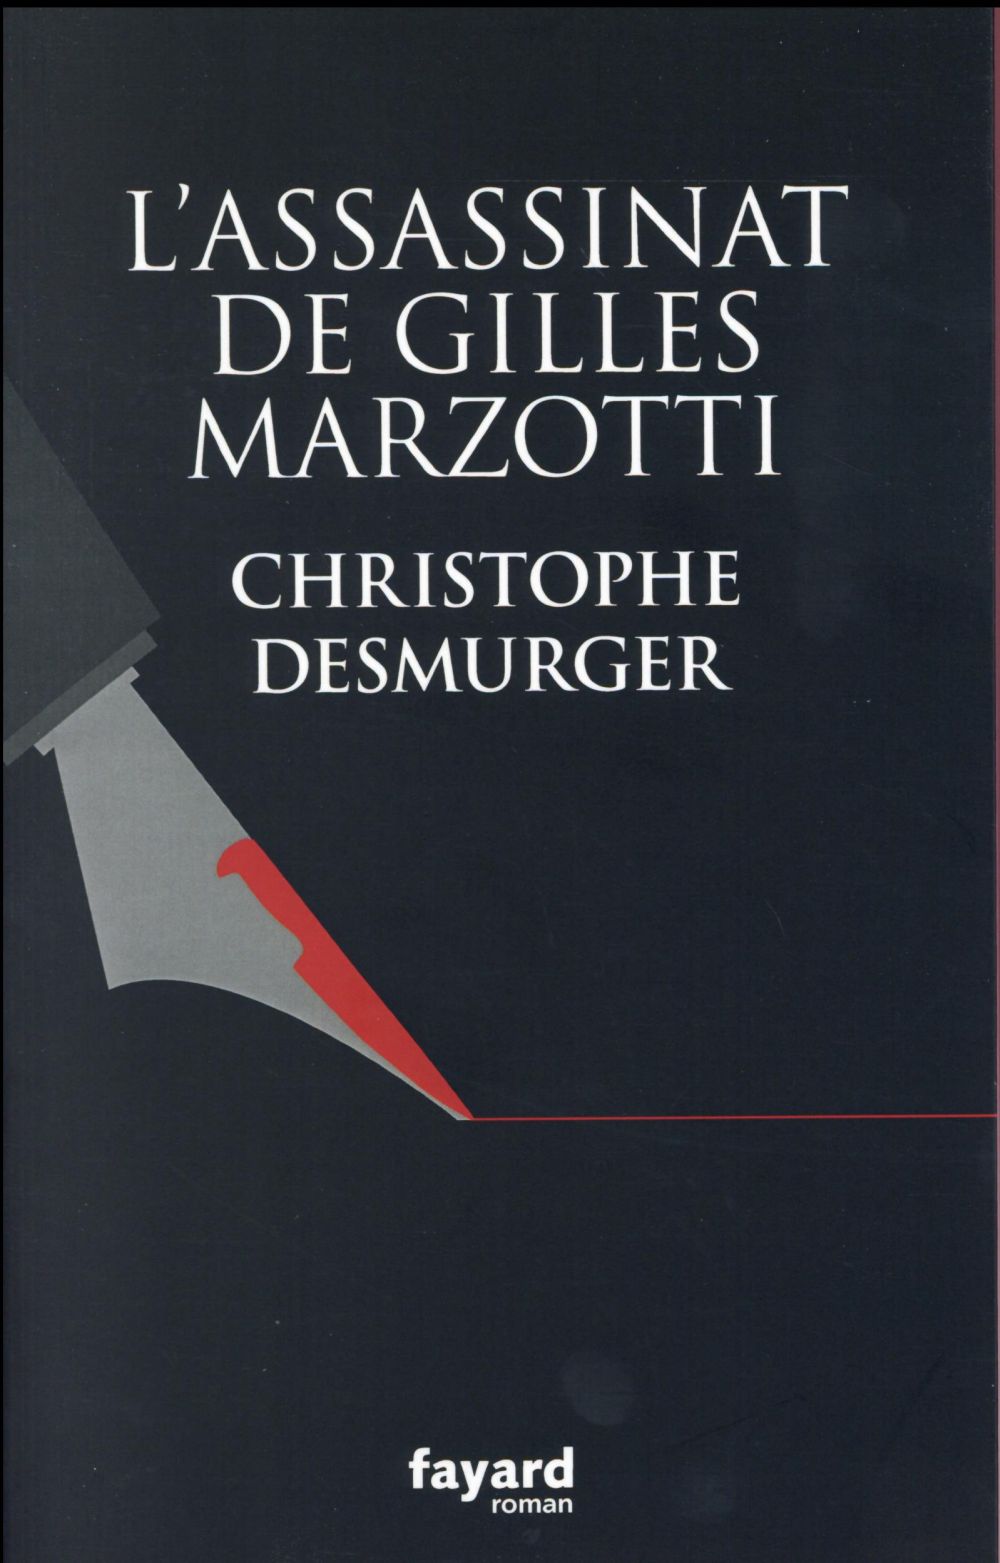 [Chronique] #53 Club des Explorateurs : Delphine et Sylvie ont lu "L'assassinat de Gilles Marzotti" de Christophe Desmurger